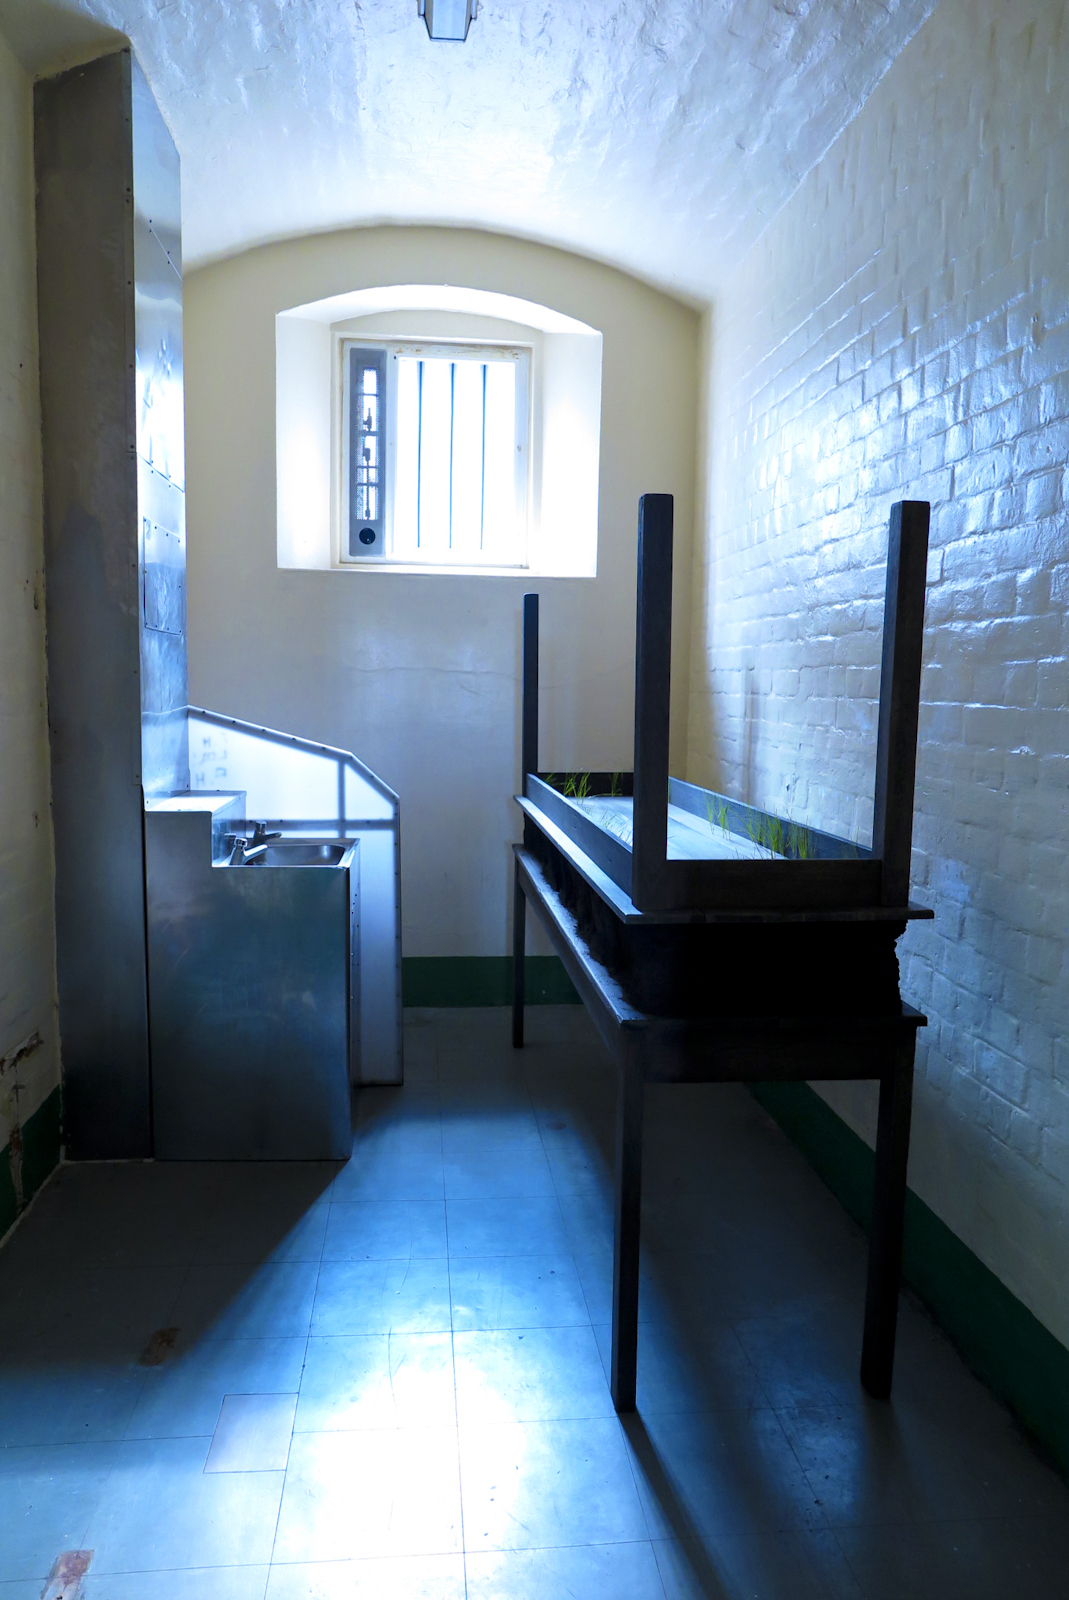 Inside Reading Prison Sep 2016-109.jpg